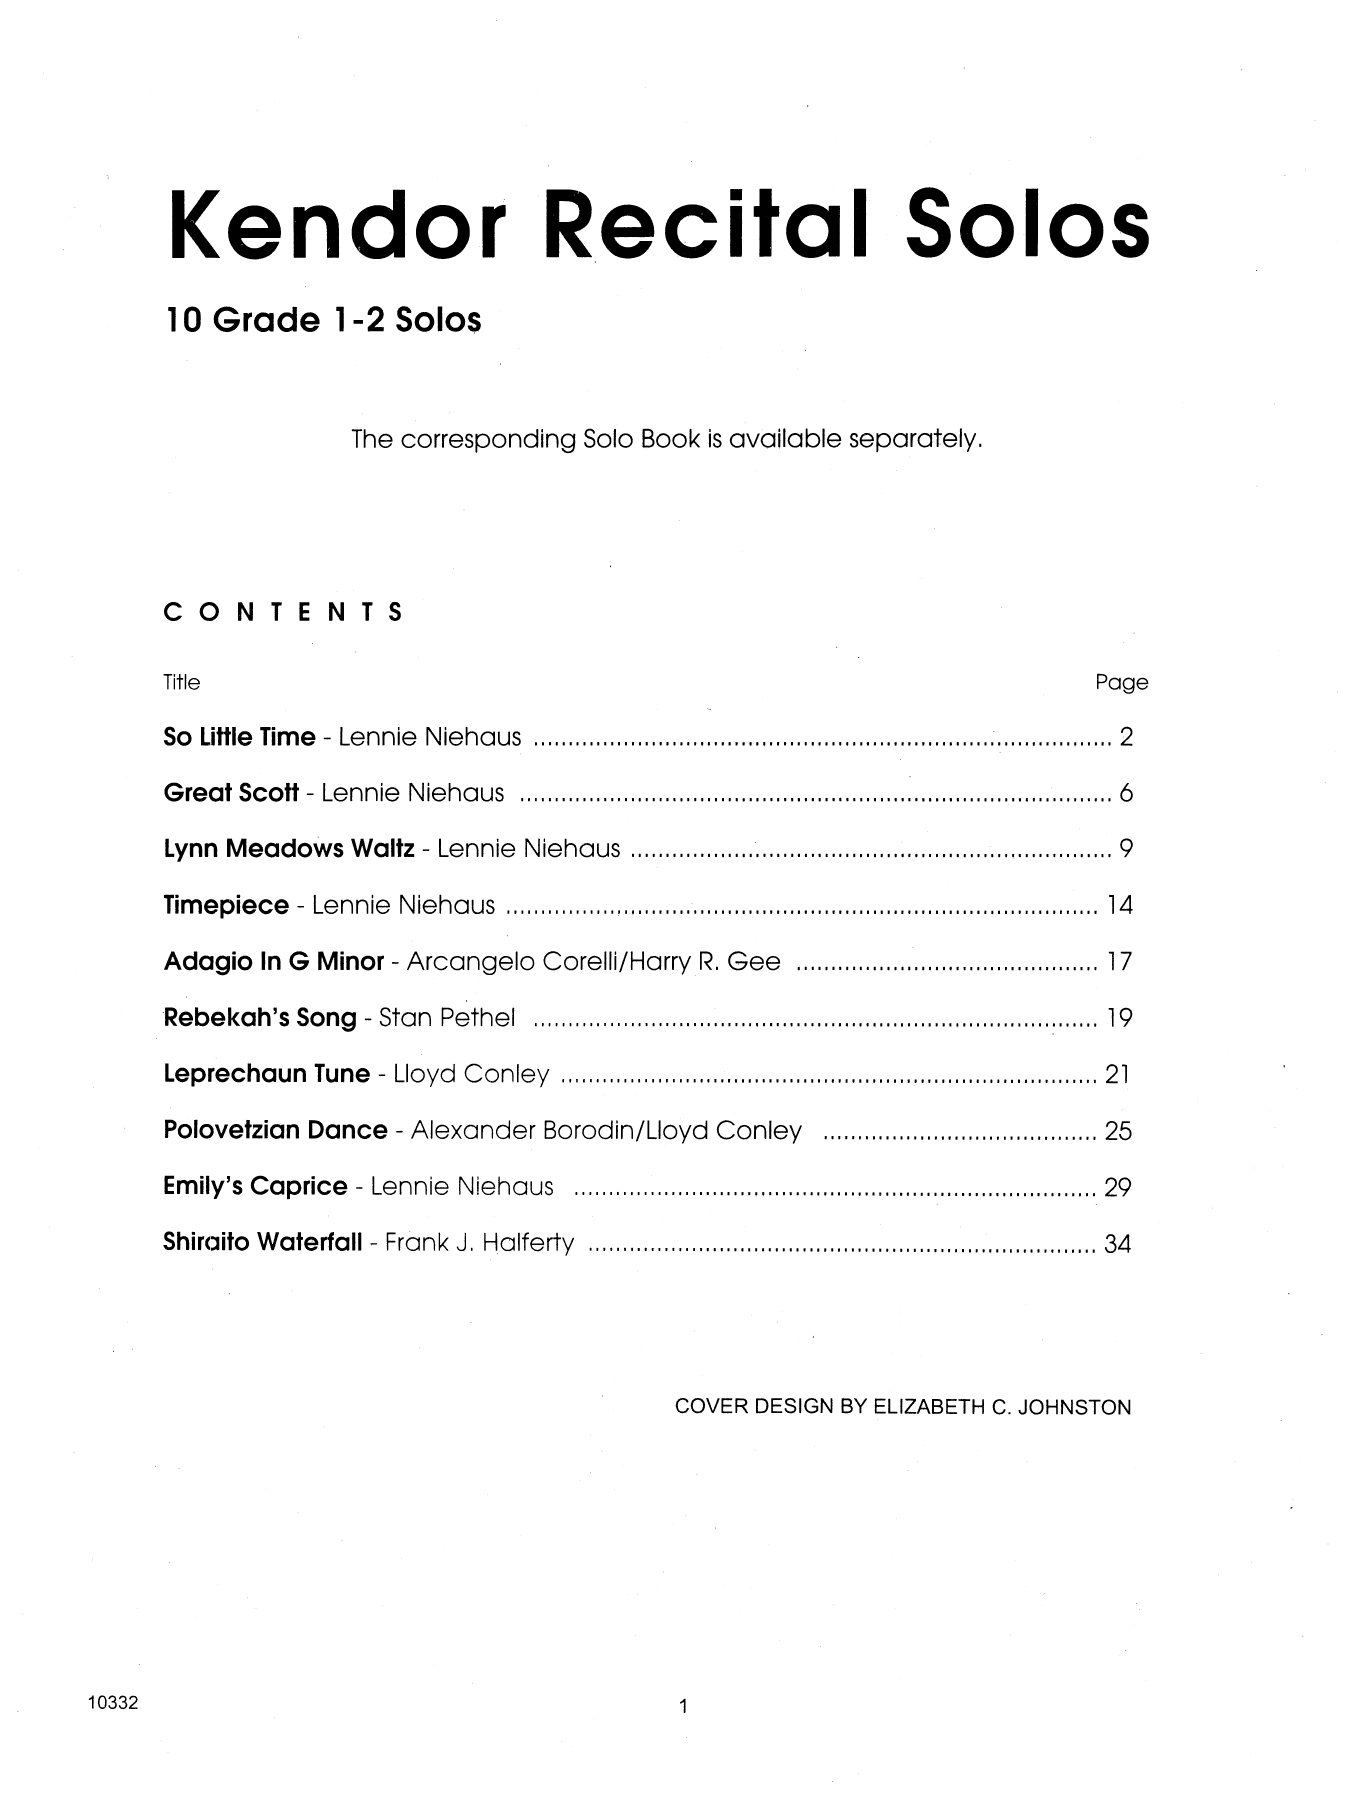 Download Various Kendor Recital Solos - Flute - Piano Ac Sheet Music